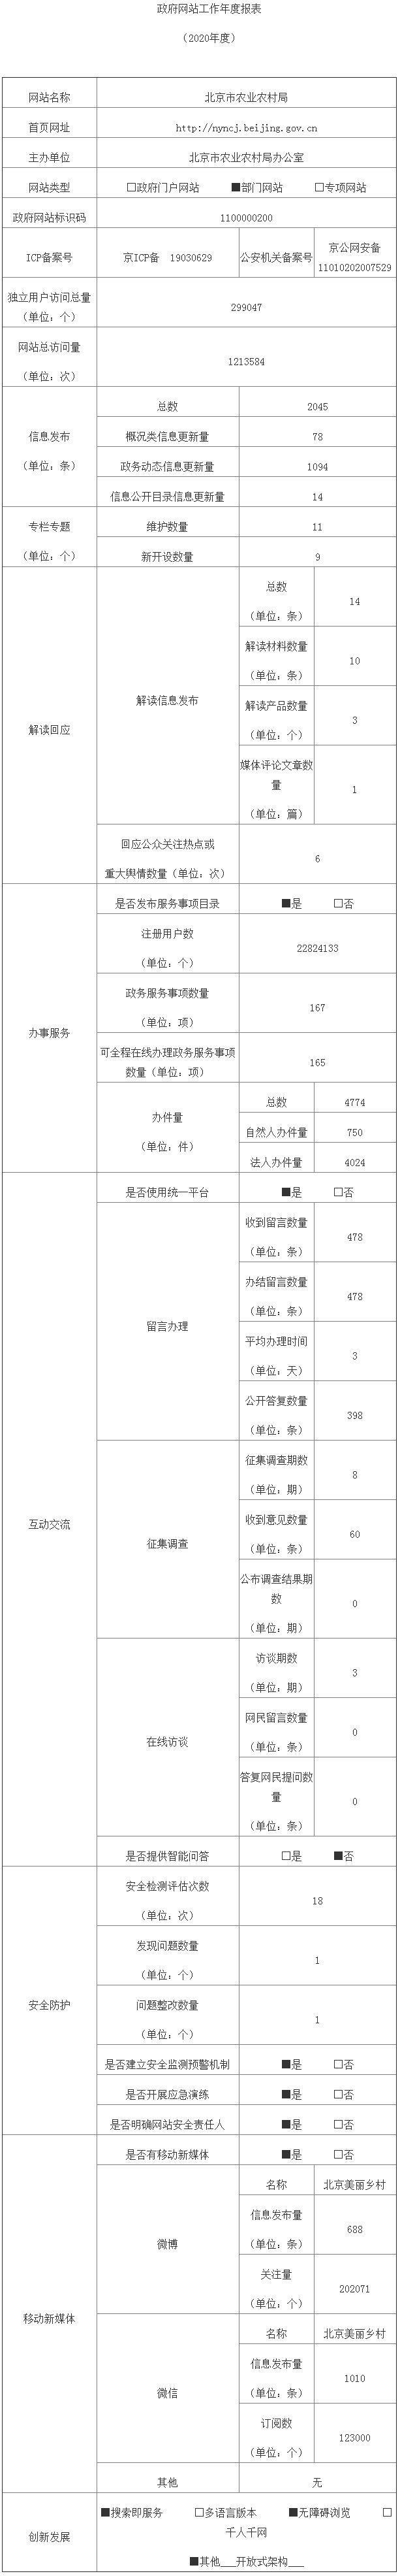 北京市农业农村局2020年政府网站年度工作报表